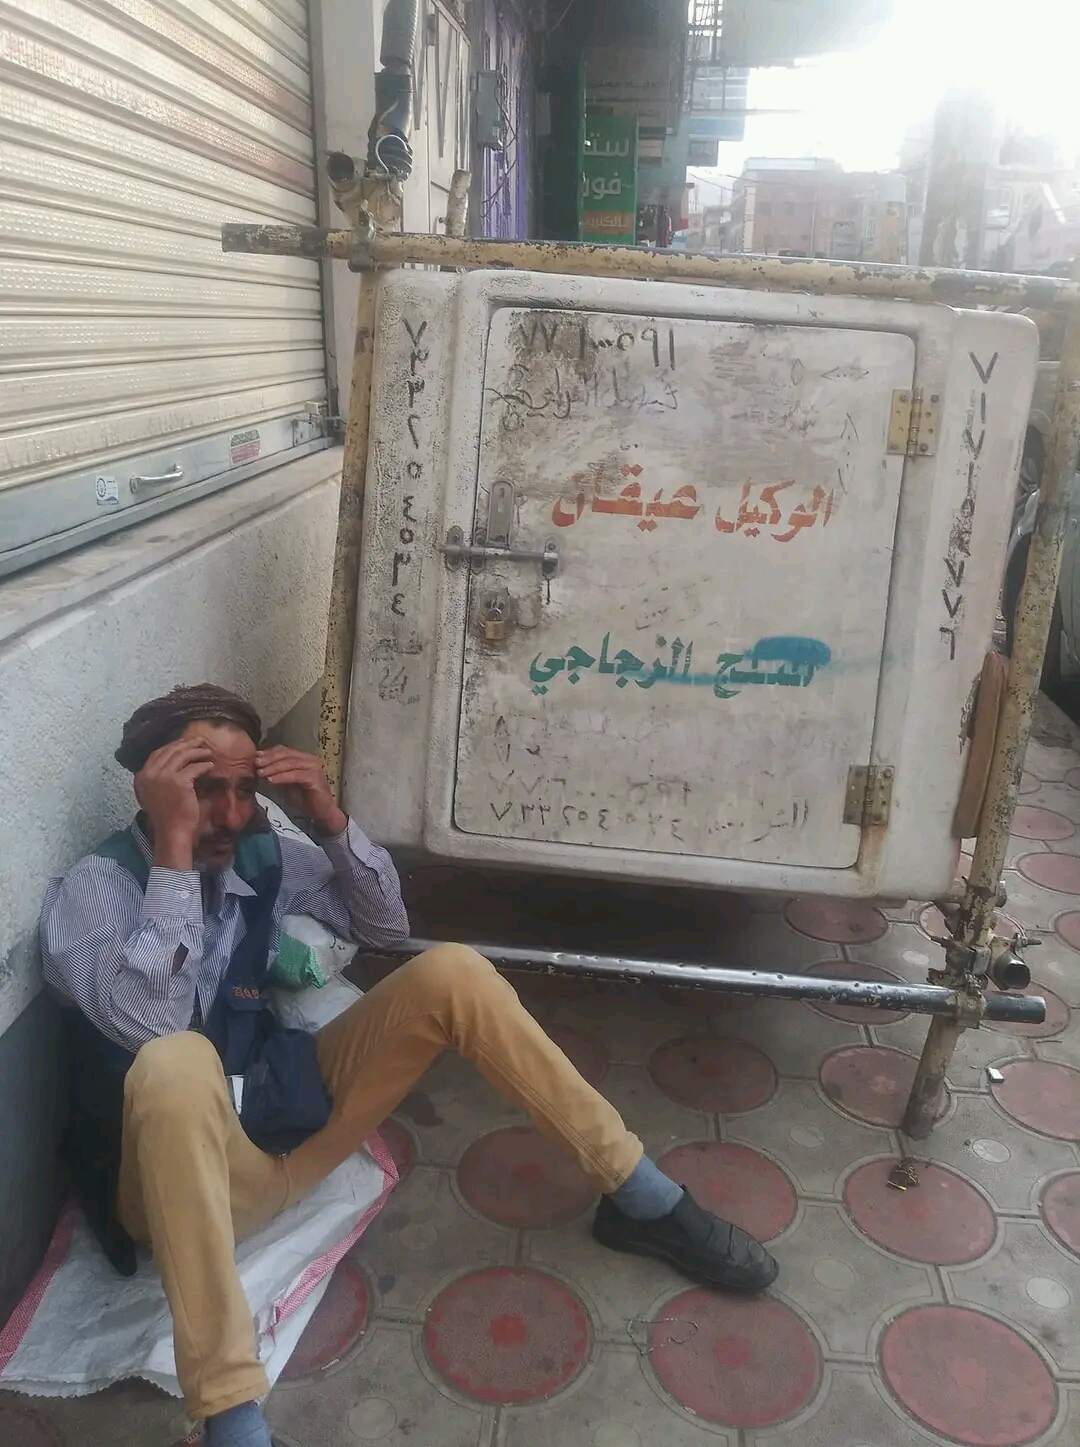 في اليمن.. صحفي يتحول الى بائعا للثلج يشتكي ظلم البلدية «صورة»